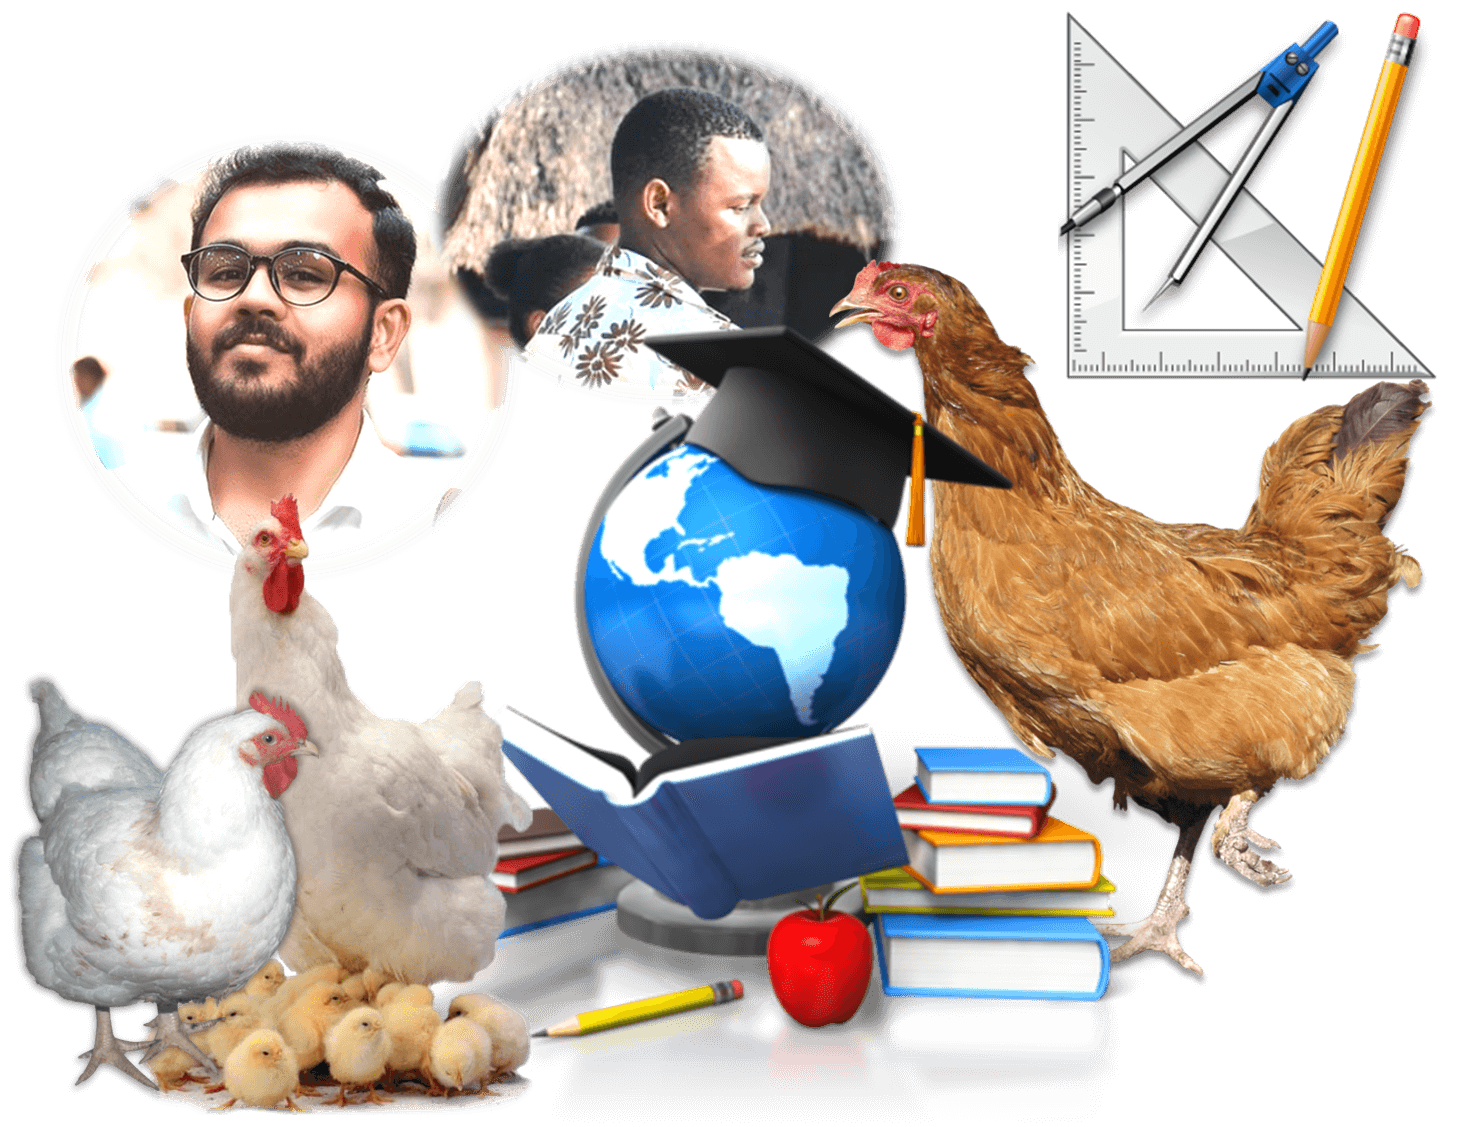 Learn Poultry Farming